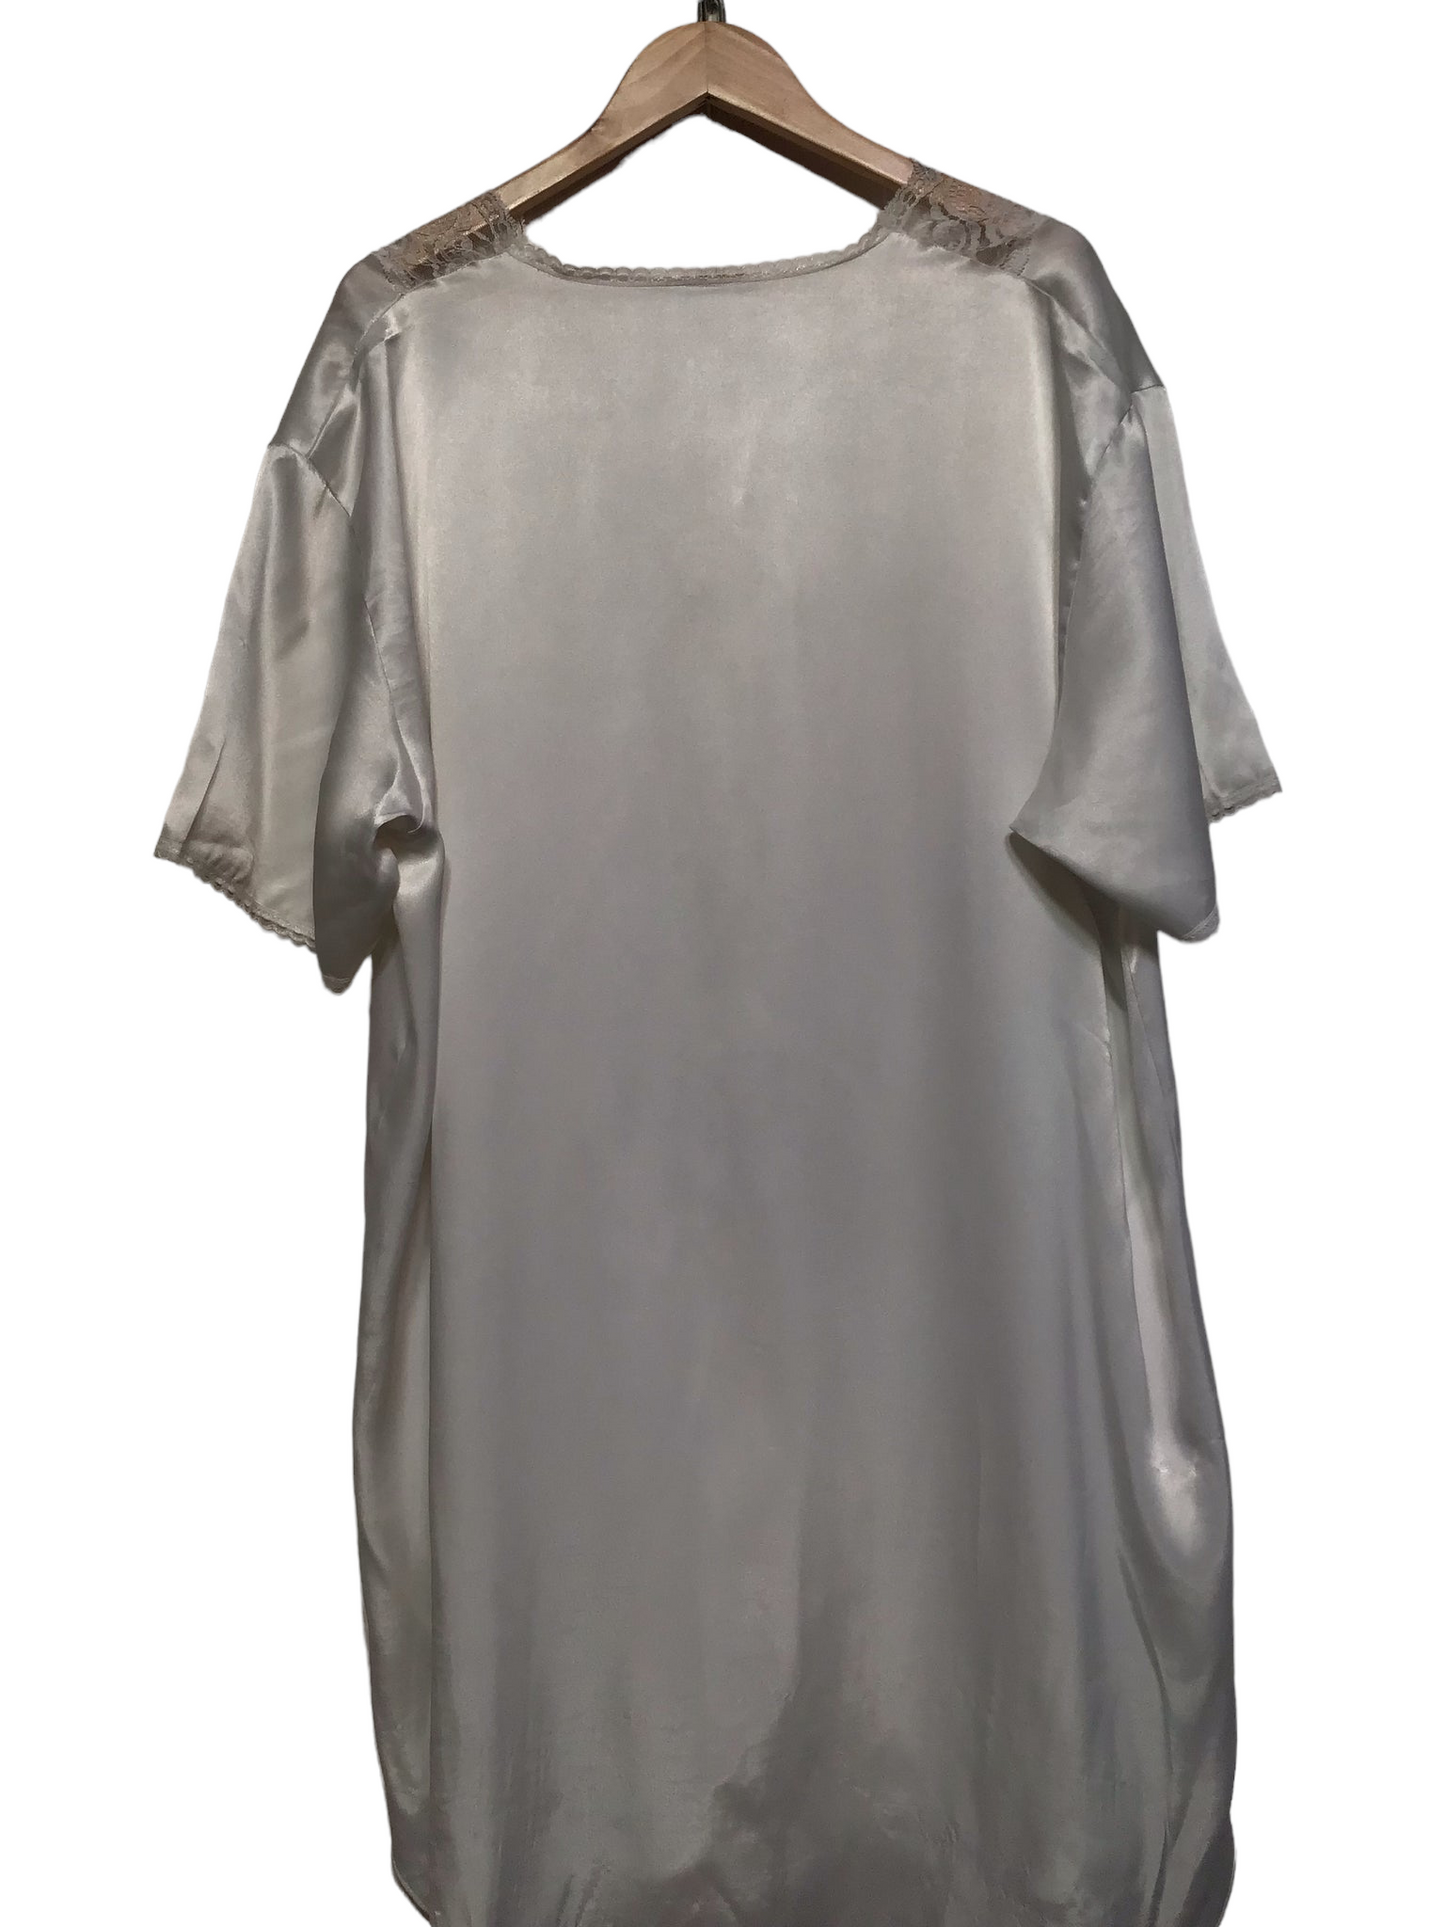 Lace Trim Night Gown (Size XXL)